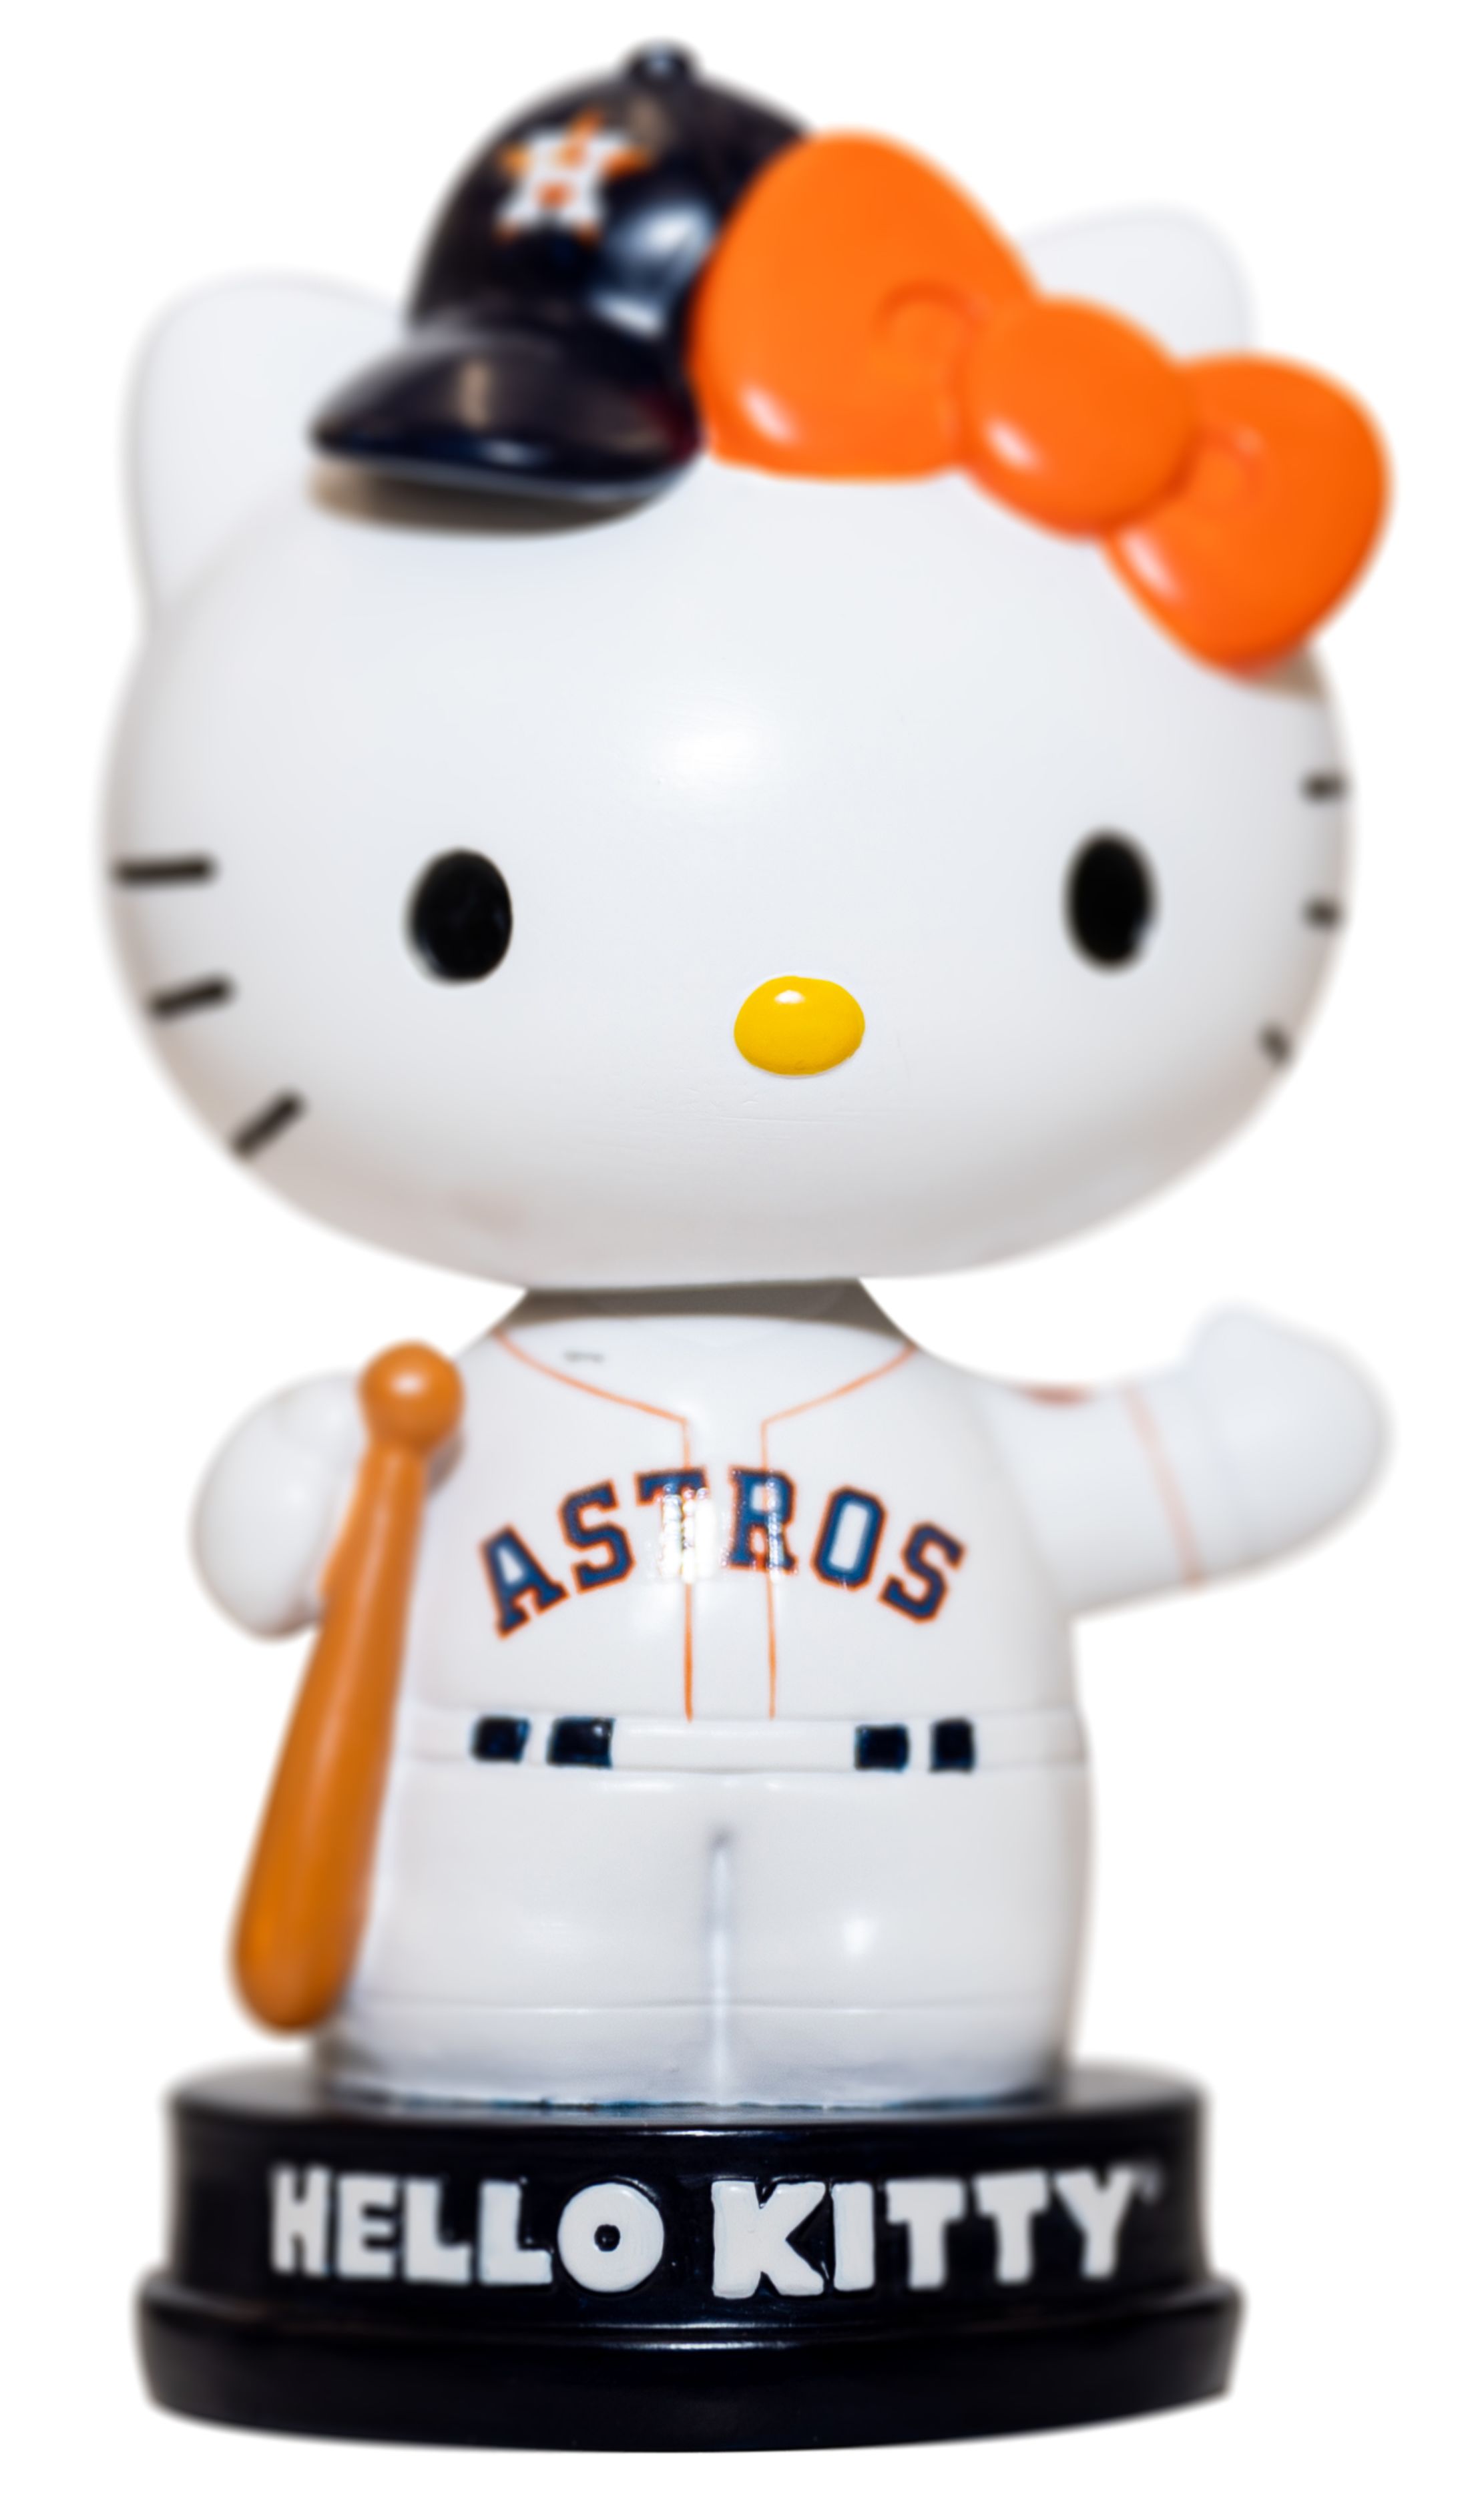 Astros Hello Kitty Night | Houston Astros